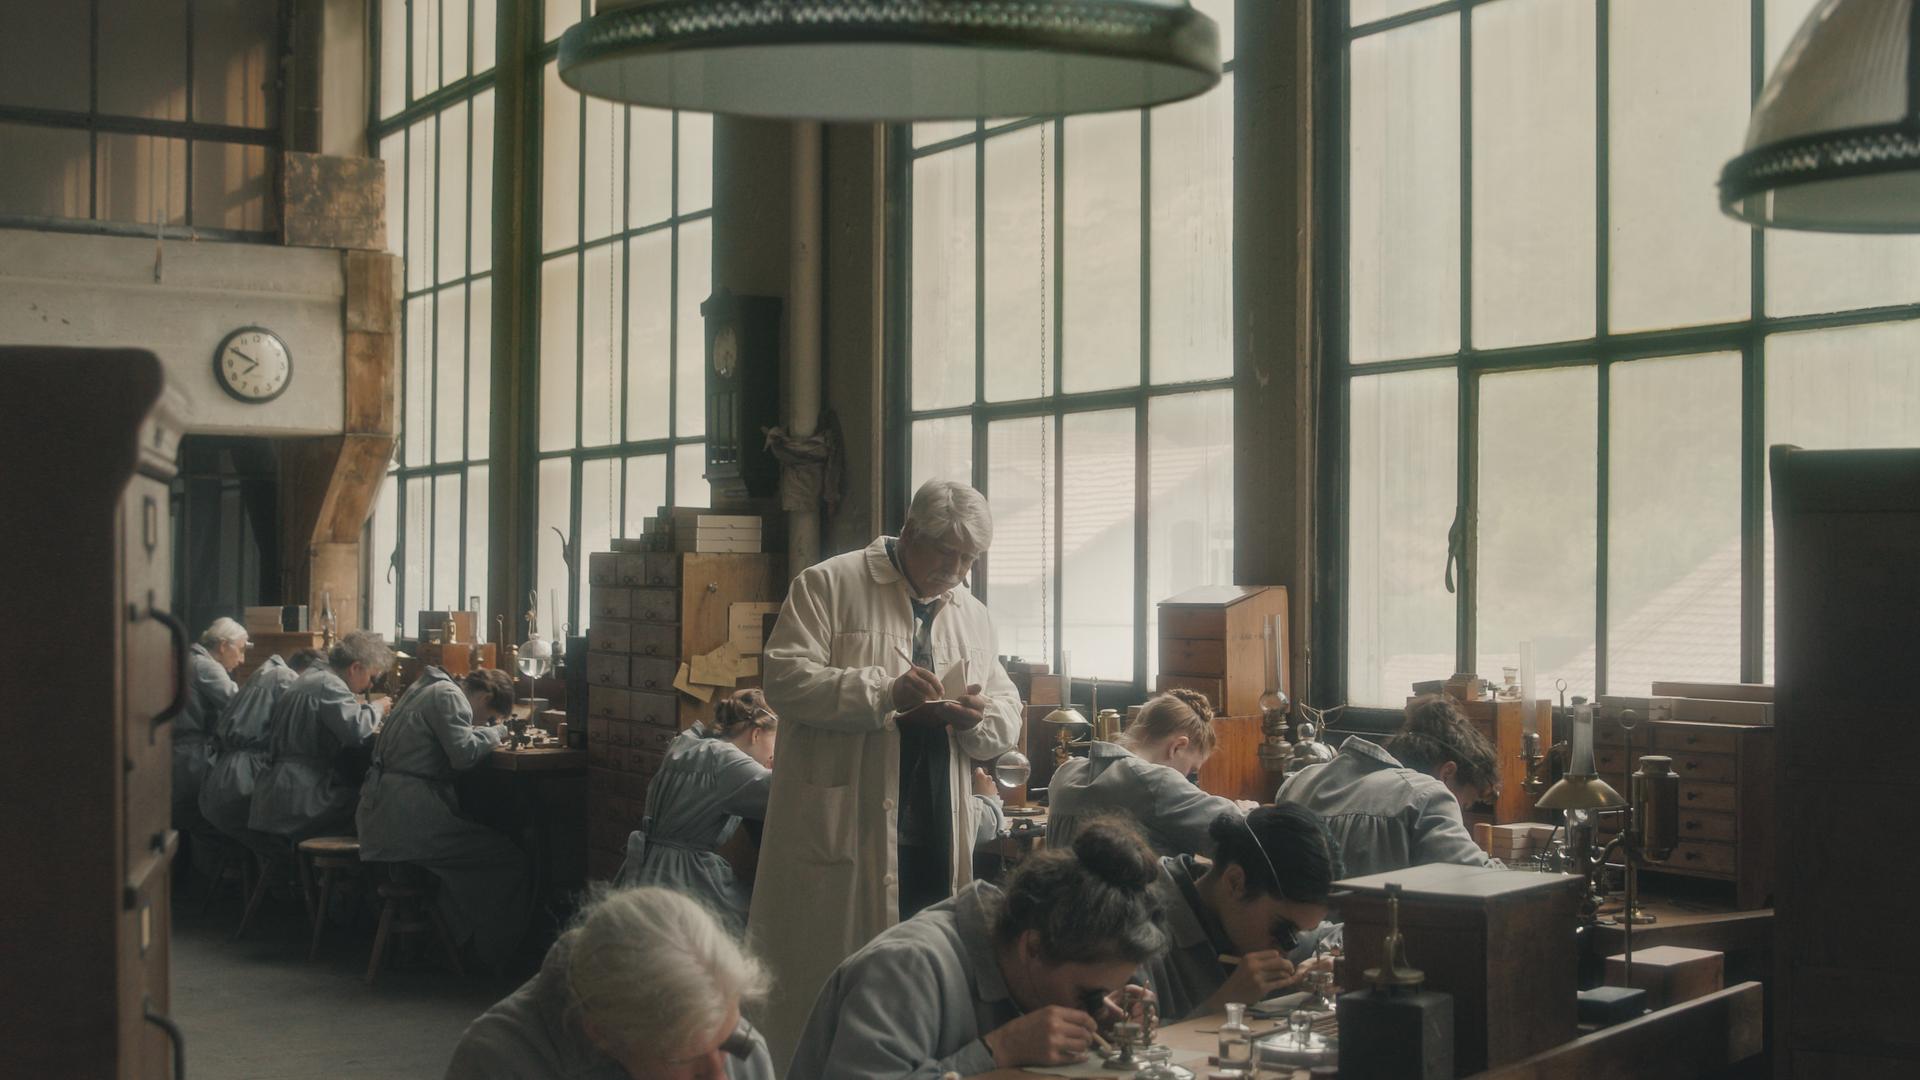 Der Filmausschnitt zeigt Arbeiterinnen in einer Uhrenfabrik, die heruntergebeugt an Tischen arbeiten, hinter ihnen steht ein Mann im weißen Kittel und kontrolliert sie.